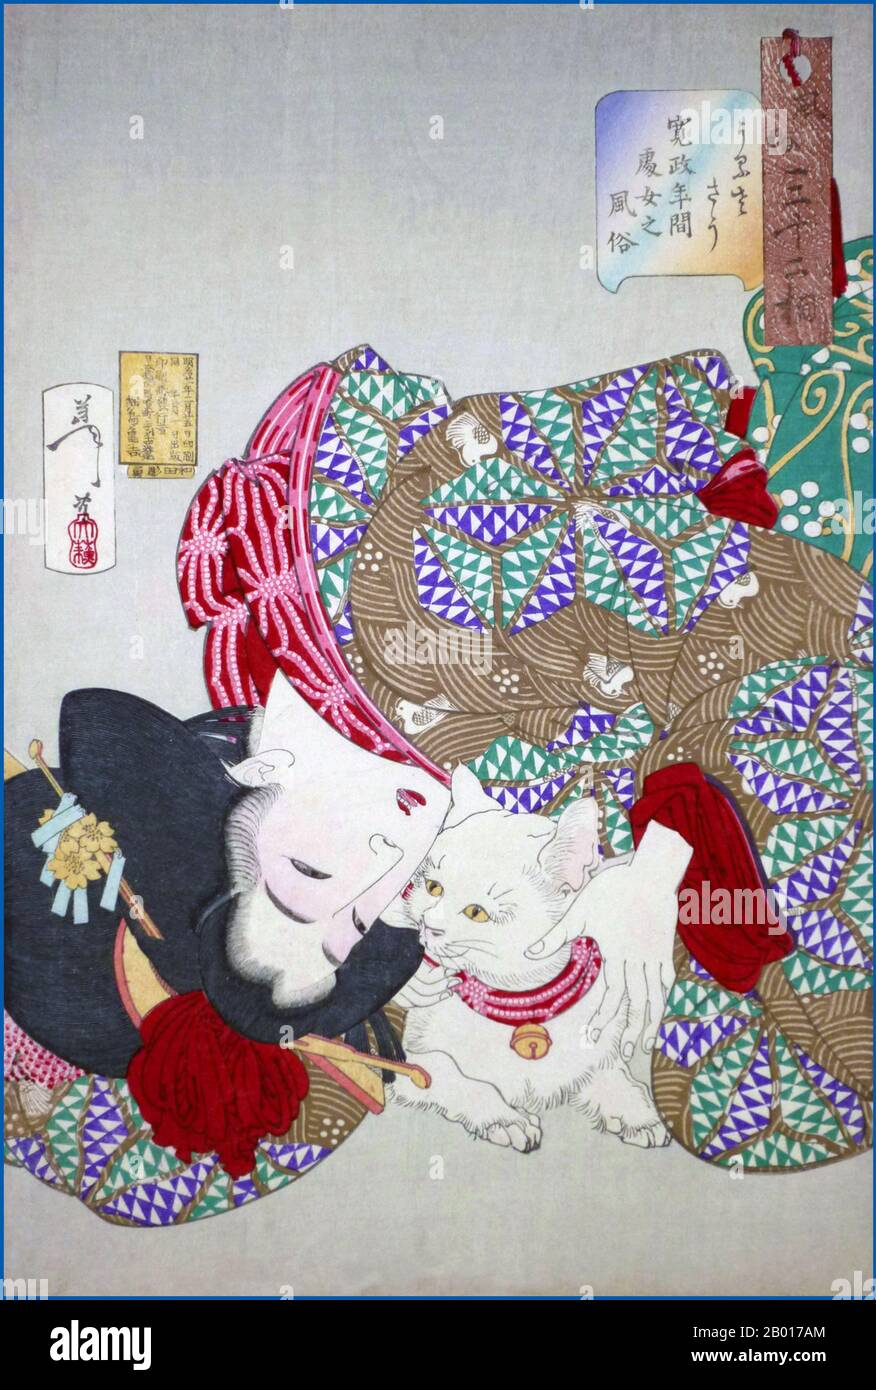 Japon : « le chat est plein de tiresome/taquinerie ».Imprimé Ukiyo-e par Tsukioka Yoshitoshi (30 avril 1839 - 9 juin 1892), 1888.Tsukioka Yoshitoshi, également appelé Tiso Yoshitoshi, était un artiste japonais.Il est largement reconnu comme le dernier grand maître d'Ukiyo-e, un type d'impression de blocs de bois japonais.Il est également considéré comme l'un des plus grands innovateurs de la forme.Sa carrière s'est étendue à deux époques : les dernières années du Japon féodal et les premières années du Japon moderne après la restauration de Meiji. Banque D'Images